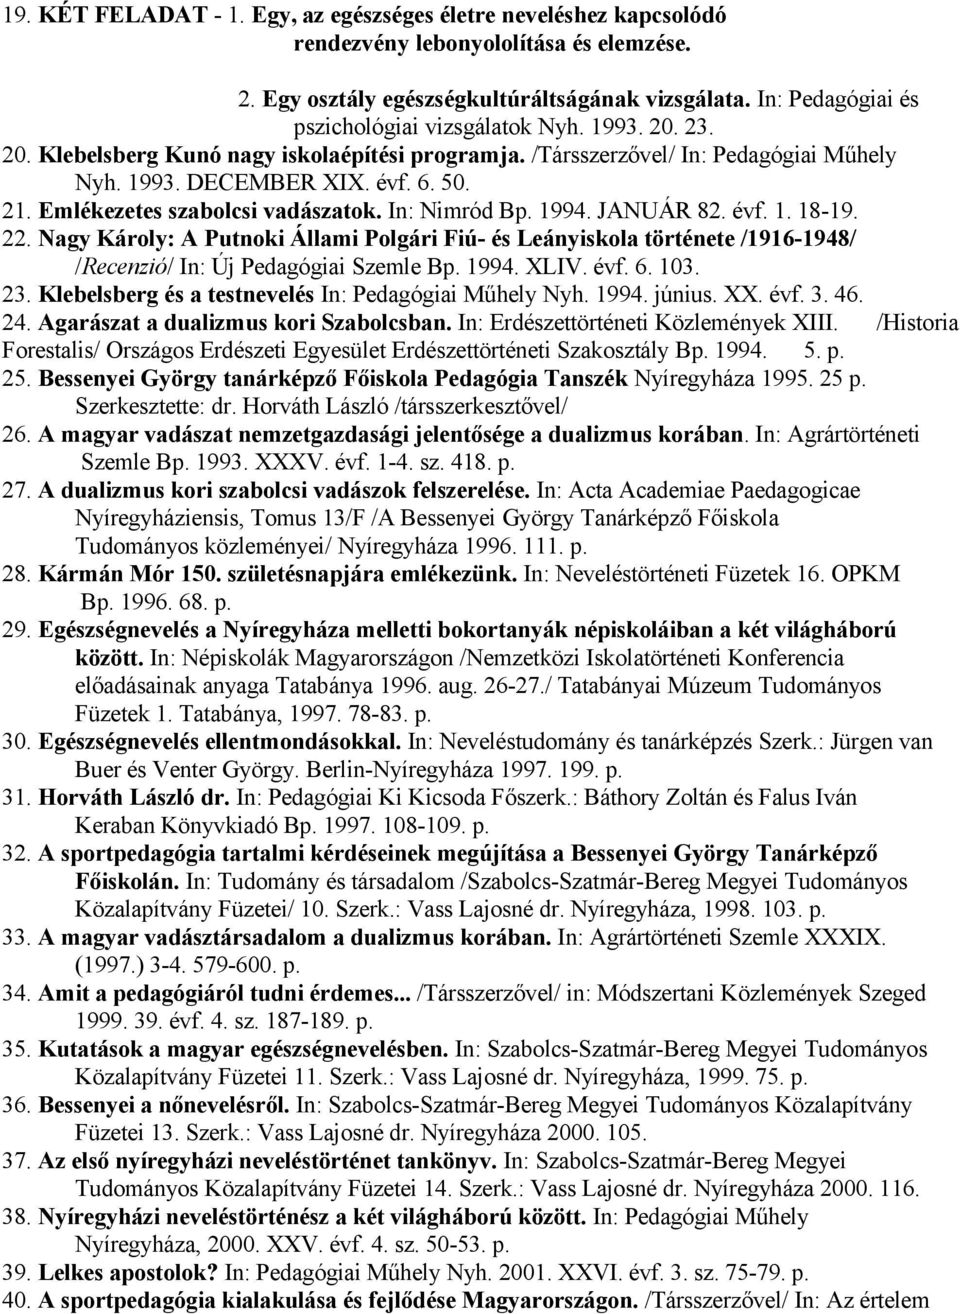 Emlékezetes szabolcsi vadászatok. In: Nimród Bp. 1994. JANUÁR 82. évf. 1. 18-19. 22.